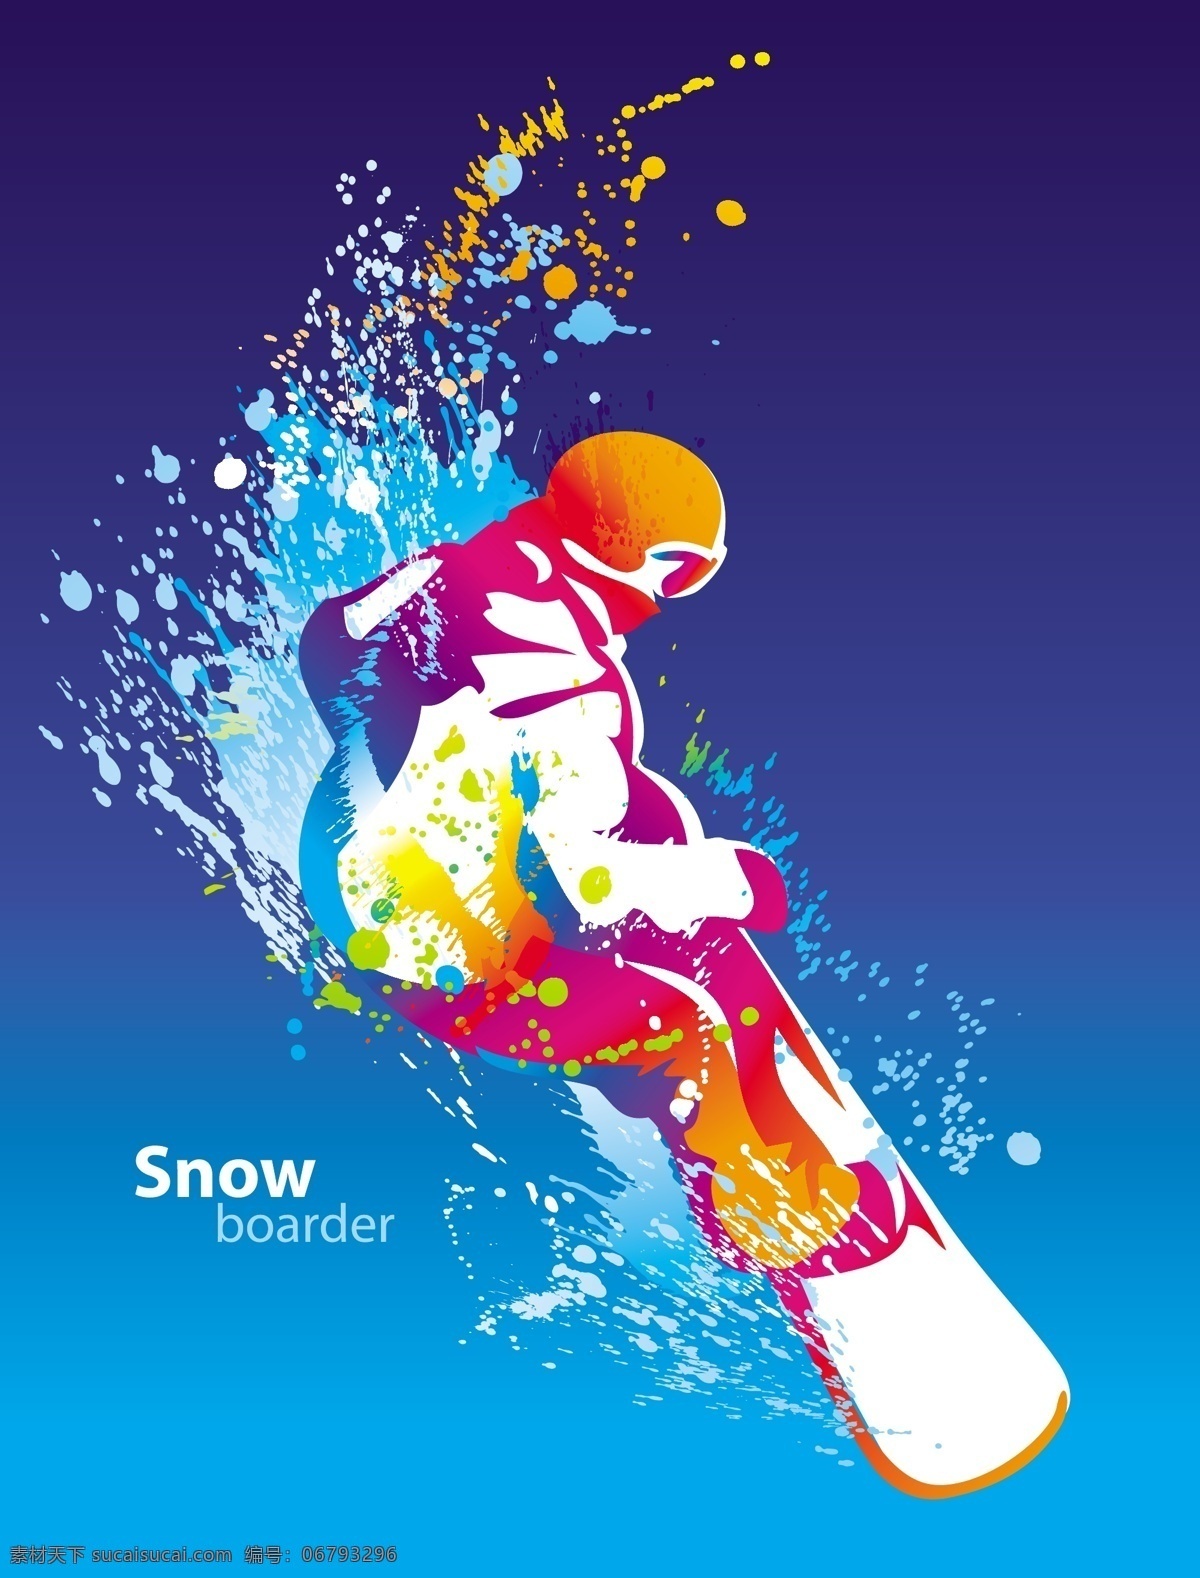 滑雪 滑雪板 冰雪运动 体育 体育设计 体育运动 奥林匹克 体育项目 时尚背景 抽象背景 背景设计 抽象设计 卡通背景 矢量设计 卡通设计 艺术设计 文化艺术 矢量